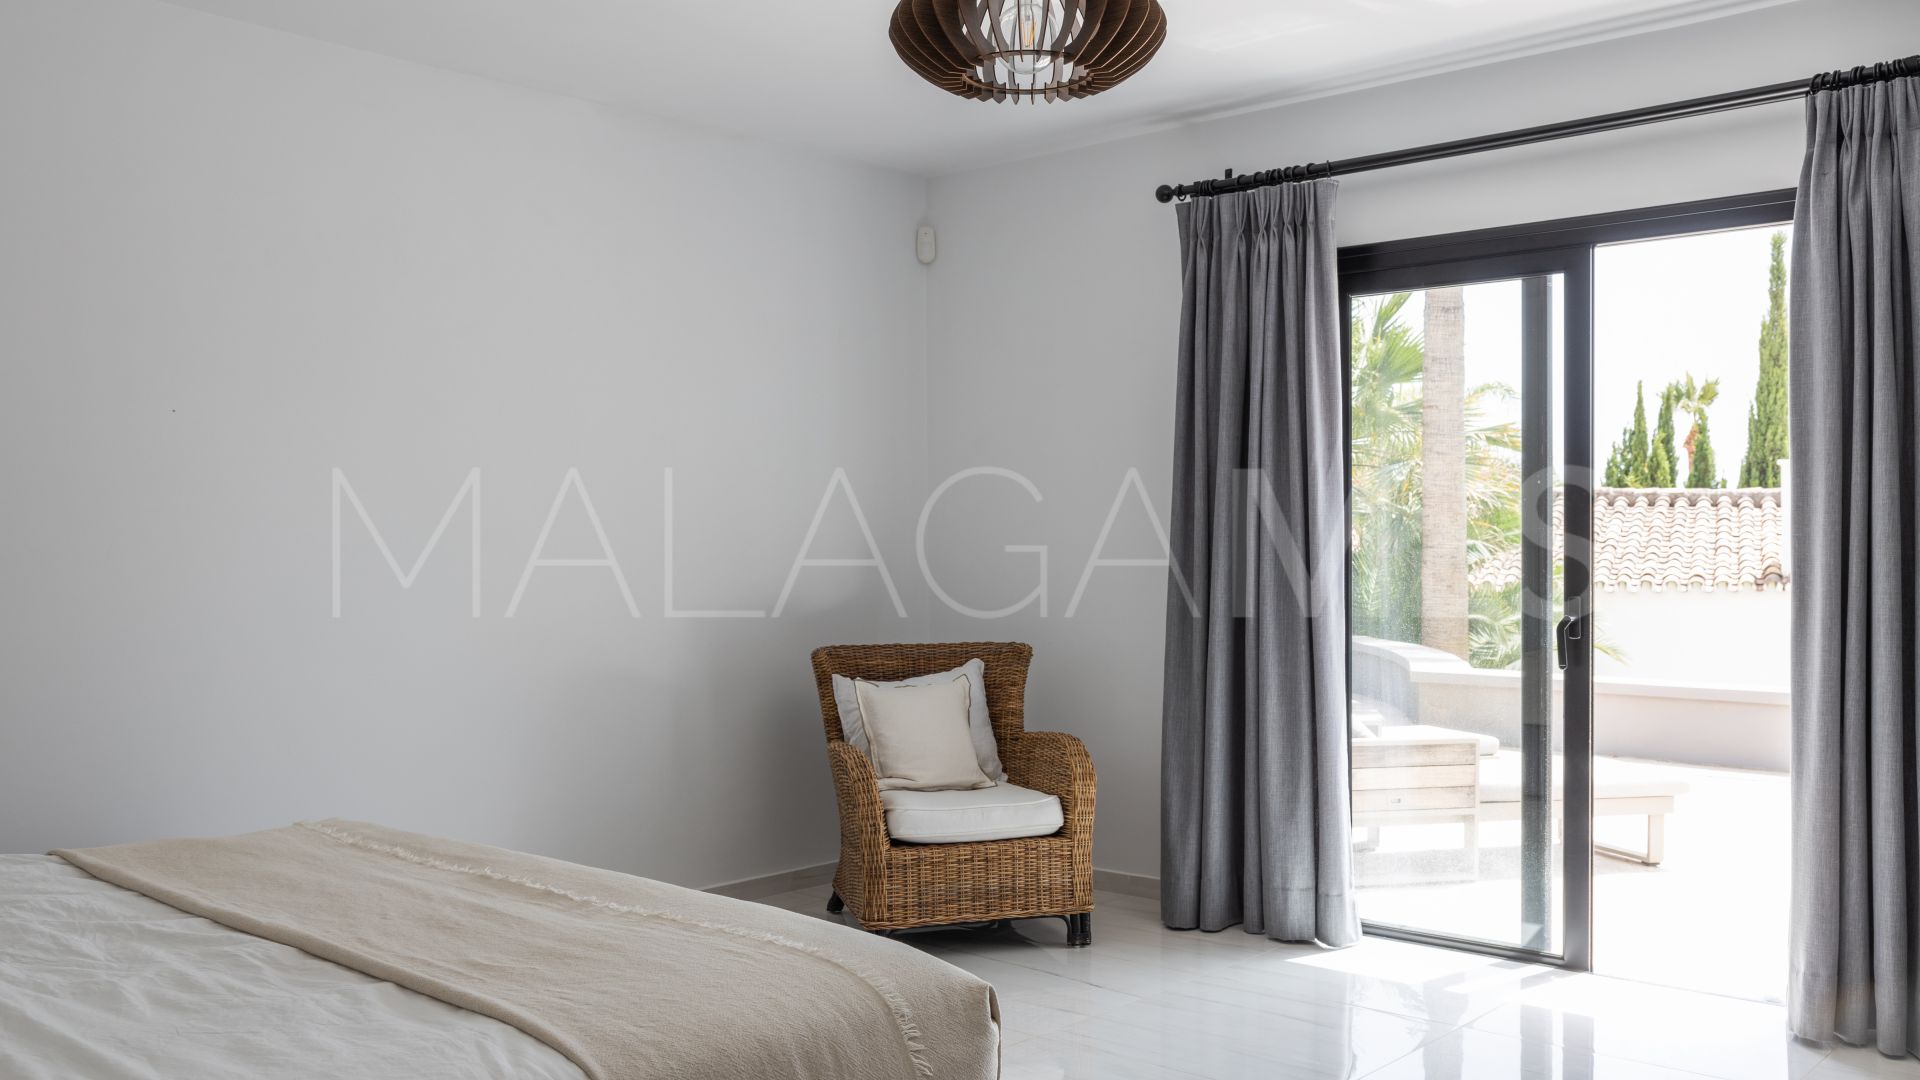 Villa a la venta with 6 bedrooms in Marbella Hill Club